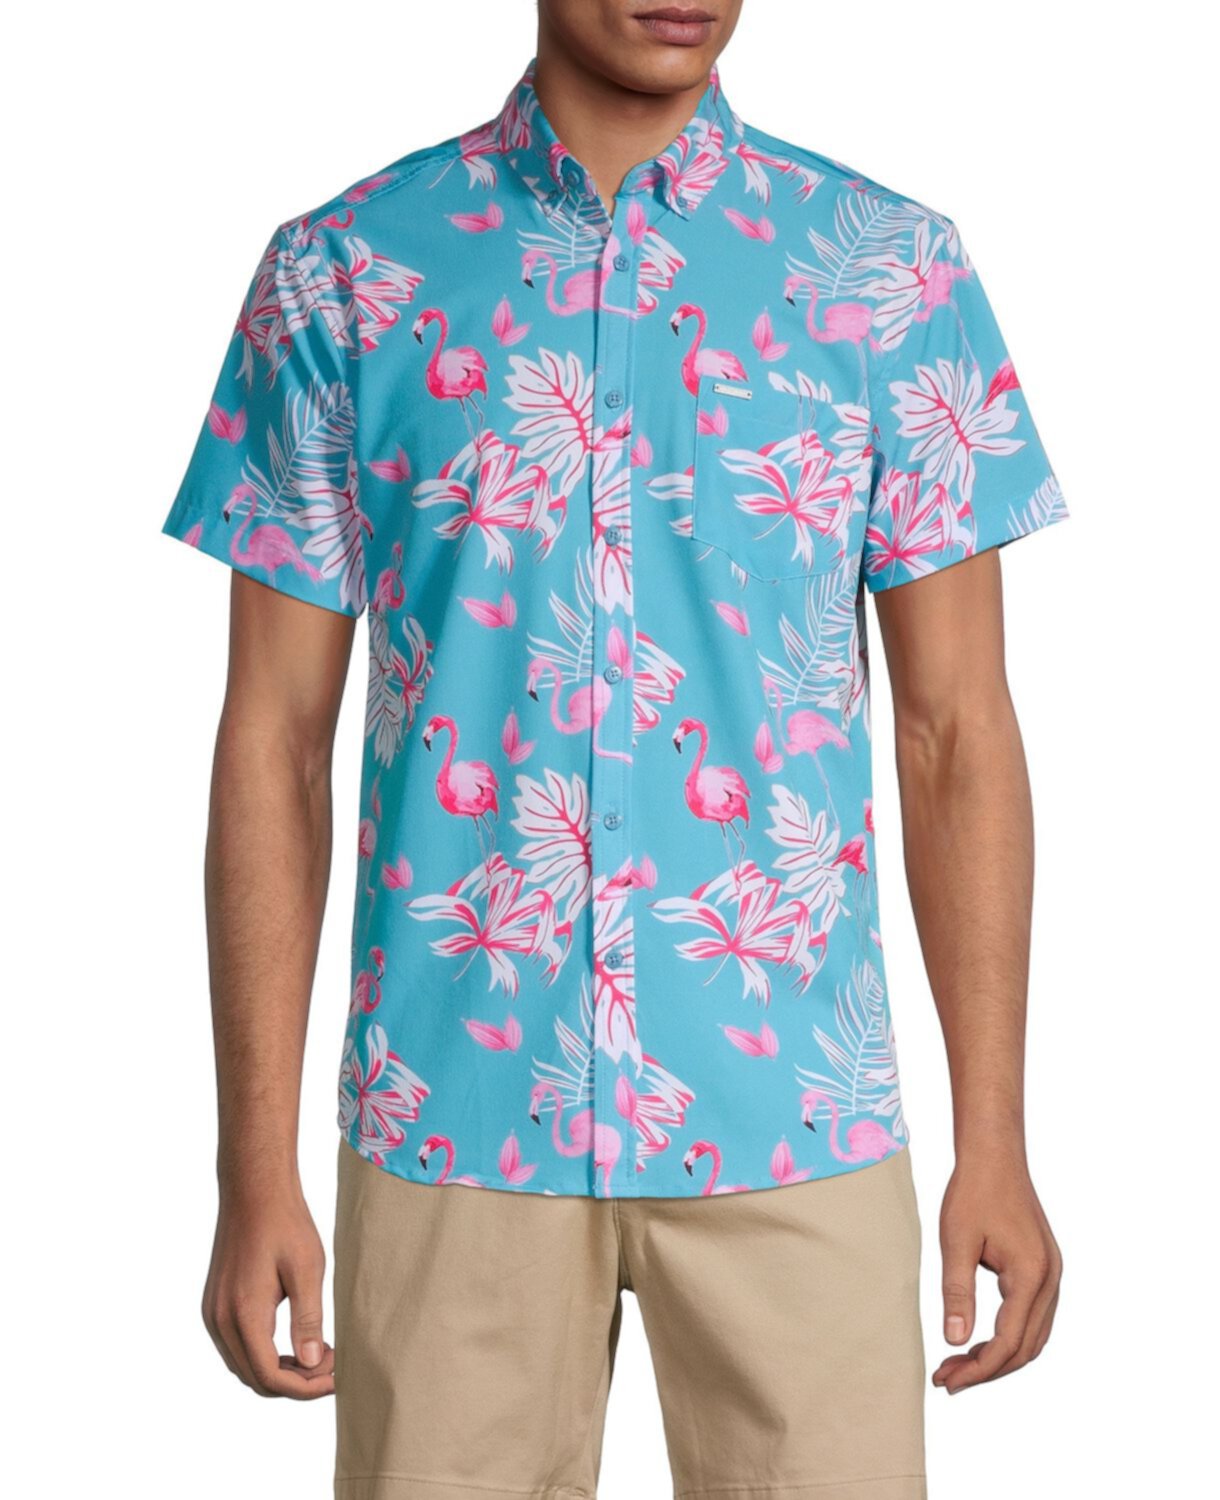 Рубашка на пуговицах с фламинго Vintage Summer